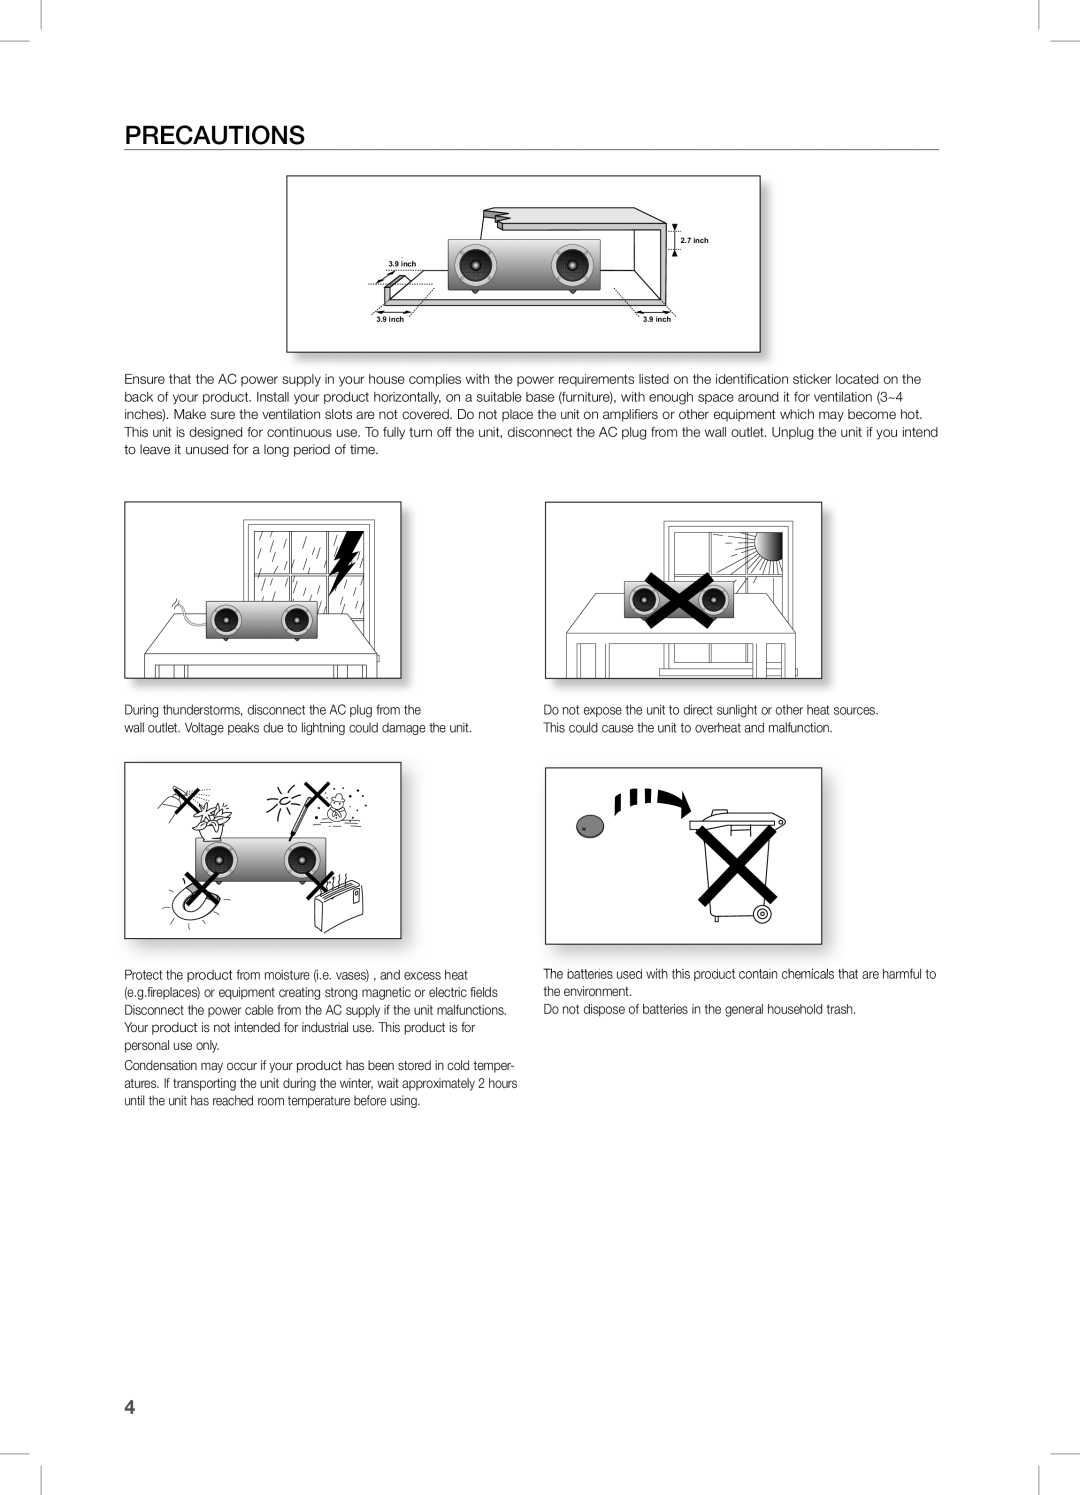 Samsung DA-E670, DAE670ZA user manual PrecaUtions 